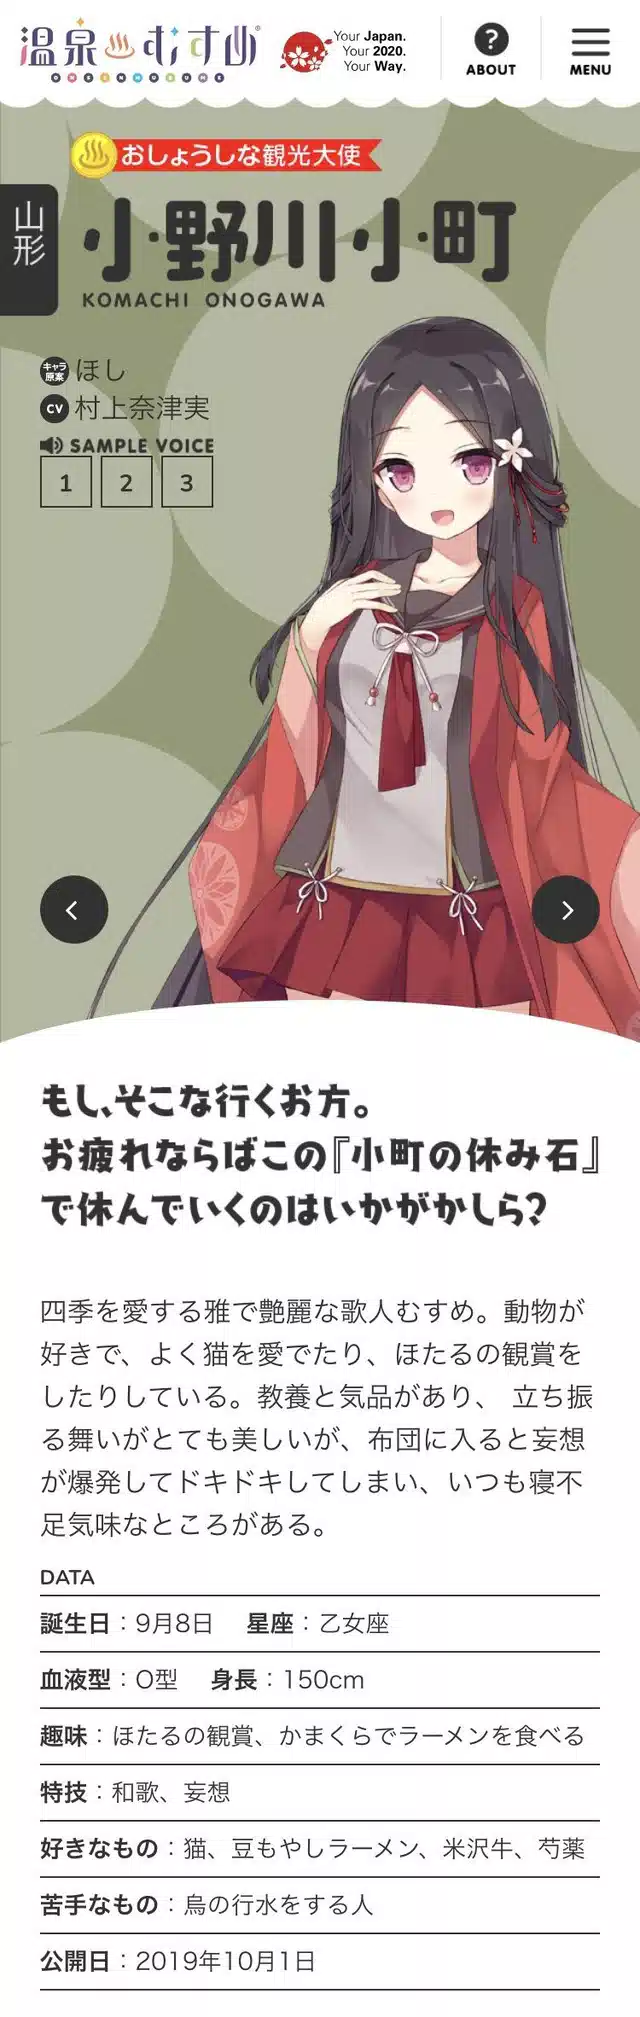 Onsen Musume vira alvo de Reclamação e Recebe mega Apoio dos Fãs 1